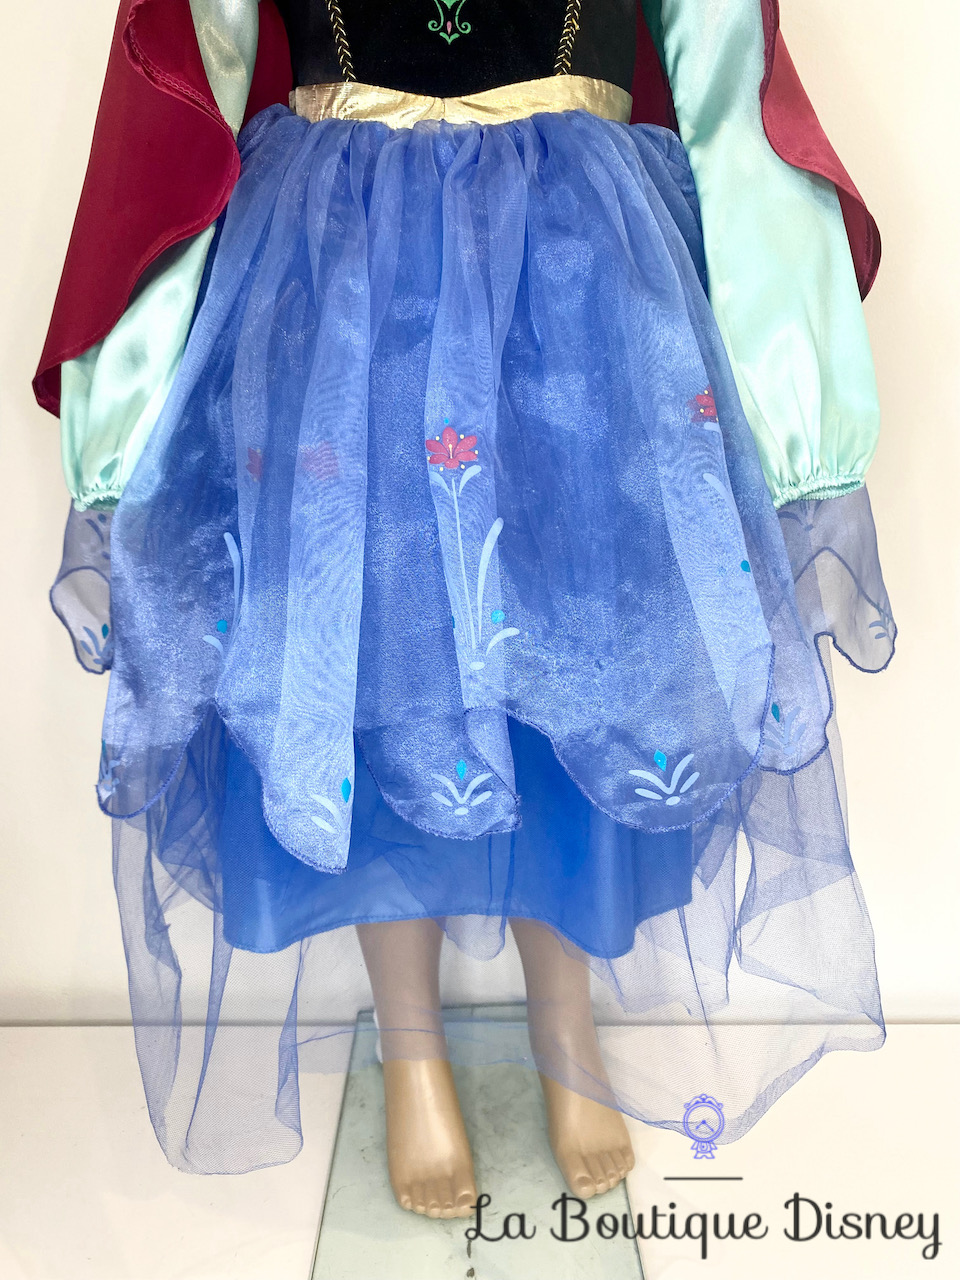 déguisement-anna-la-reine-des-neiges-disney-store-robe-princesse-bleu-cape-rose-6